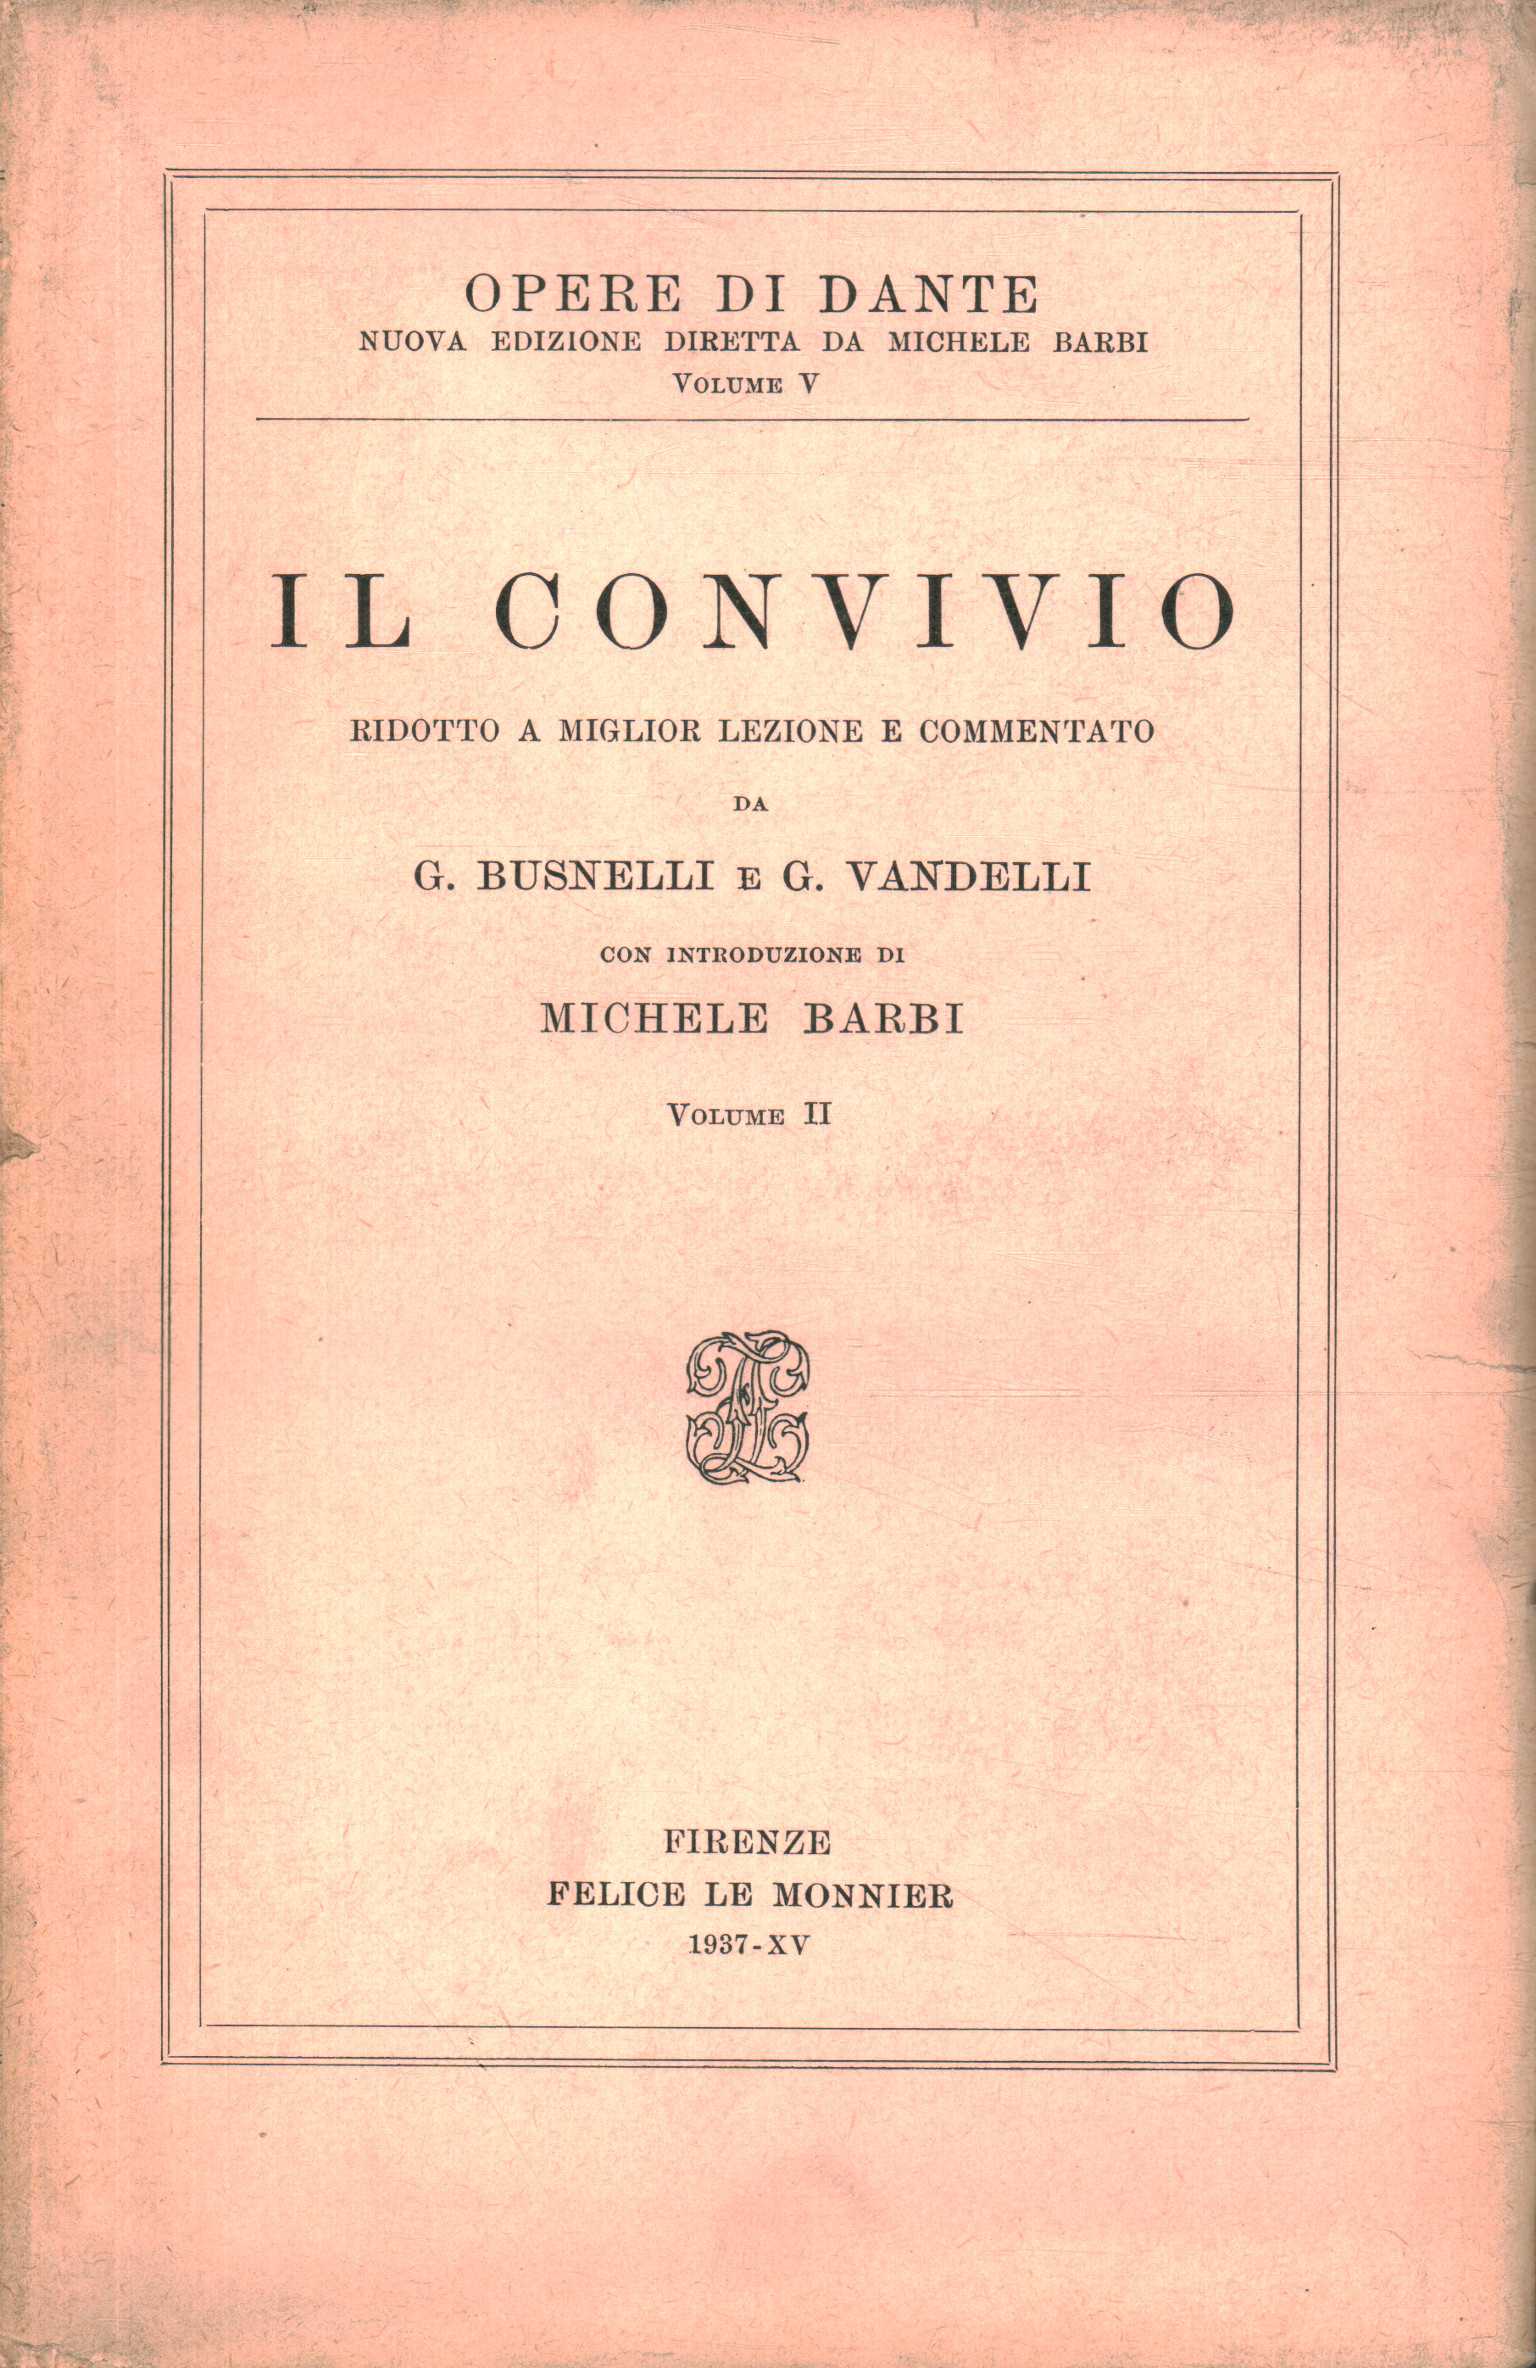 Il Convivio (Volume II)